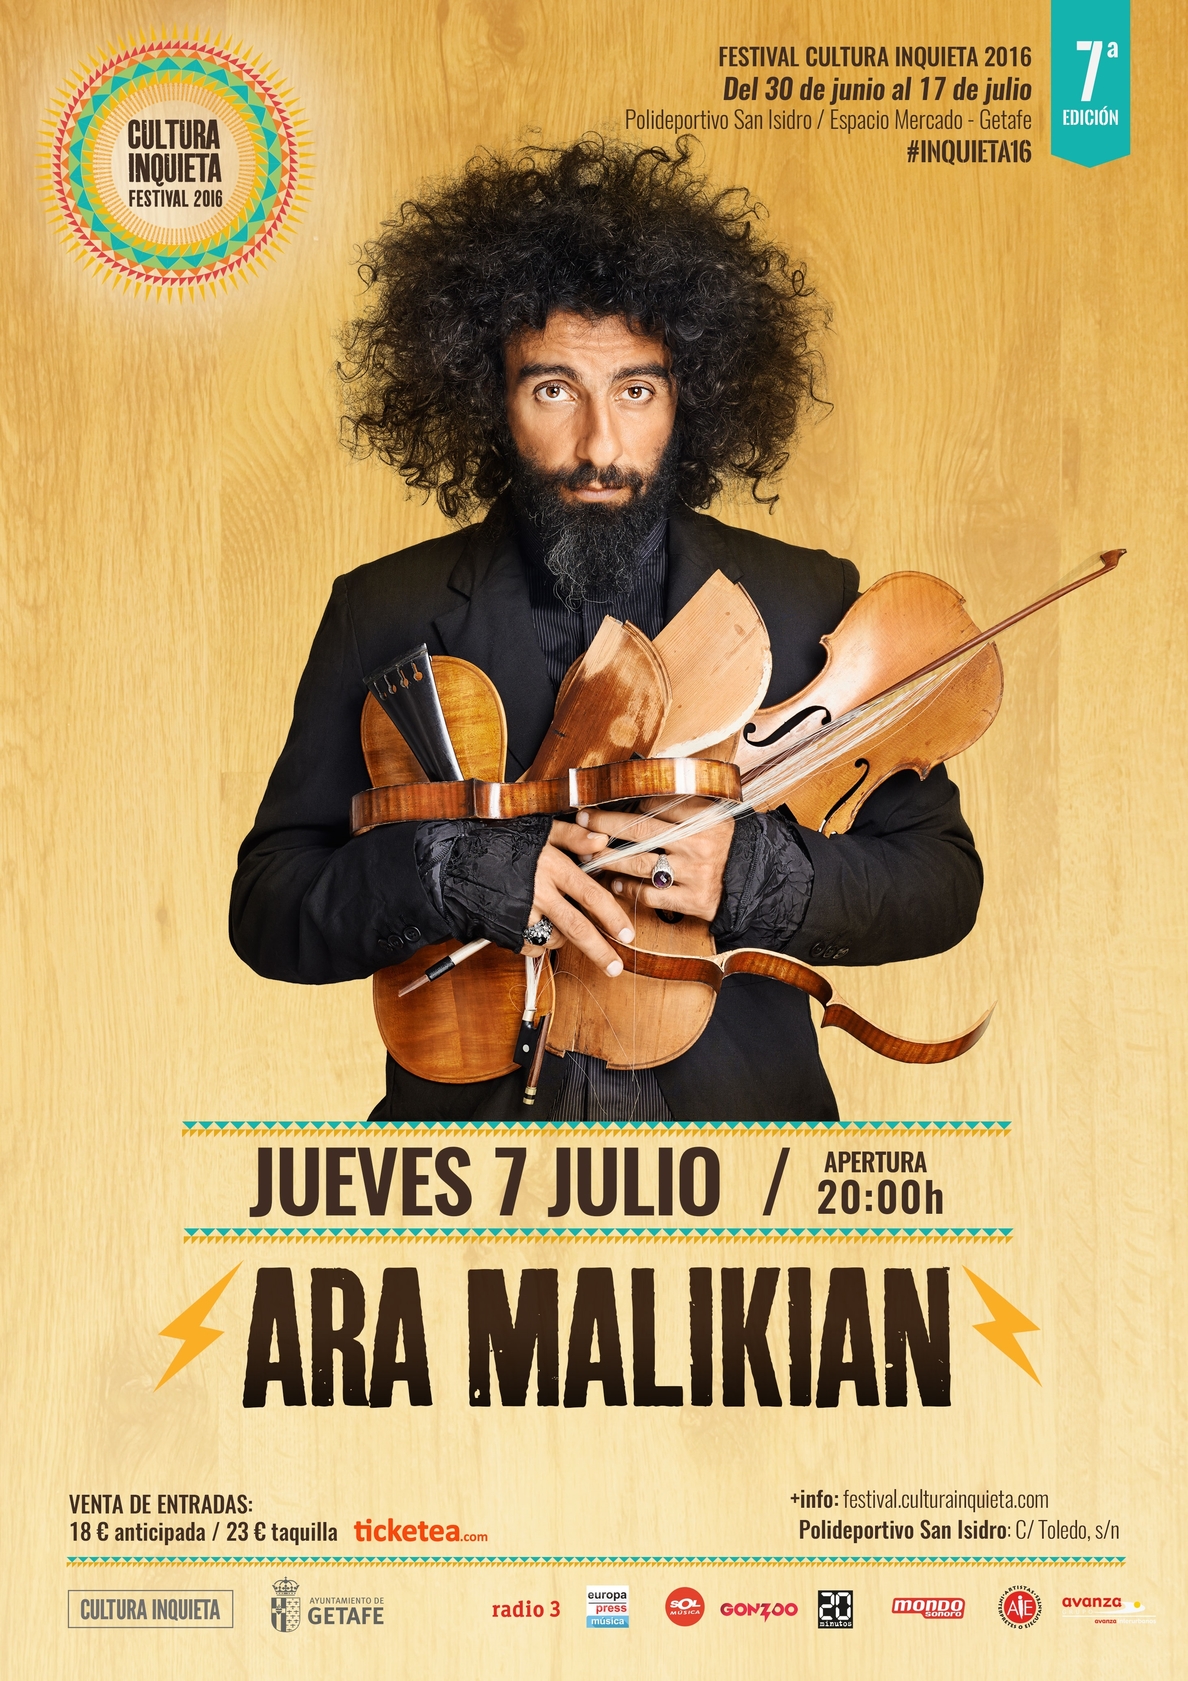 El violinista Ara Malikian actuará en el Festival Cultura Inquieta 2016